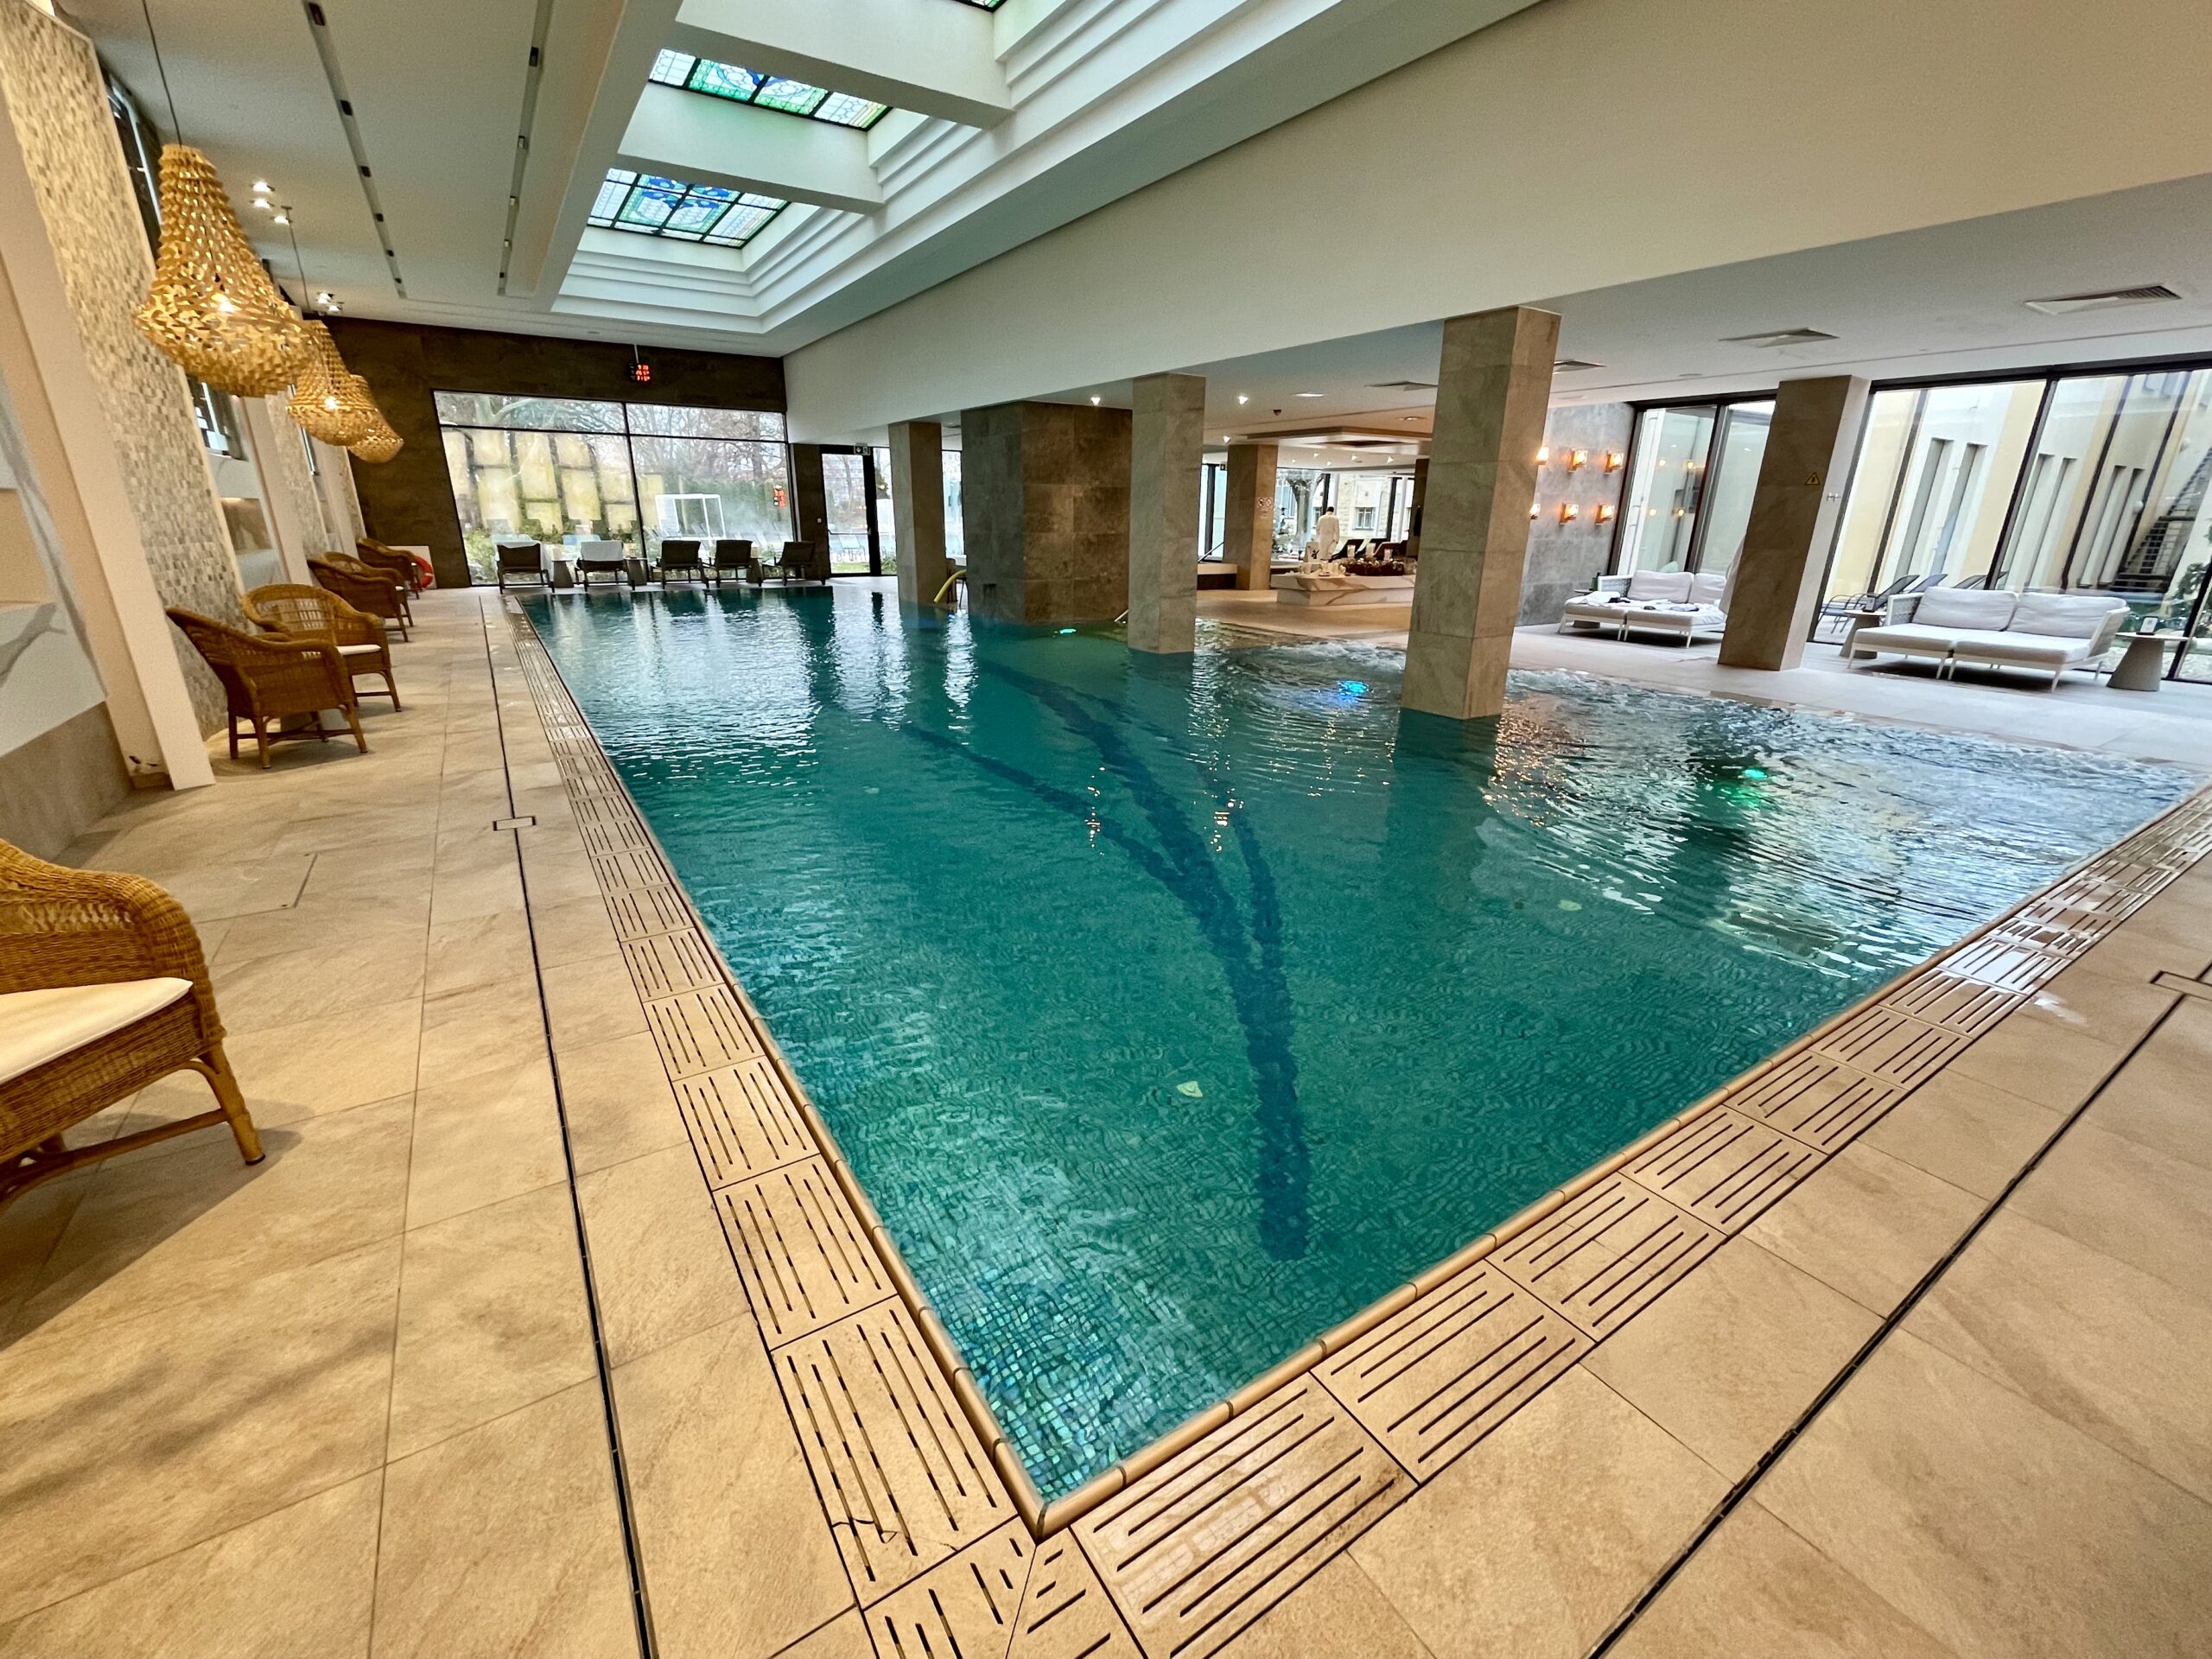 Rekreacyjne baseny i sauny dopełniają ofertę ośrdoak firmy Ensana